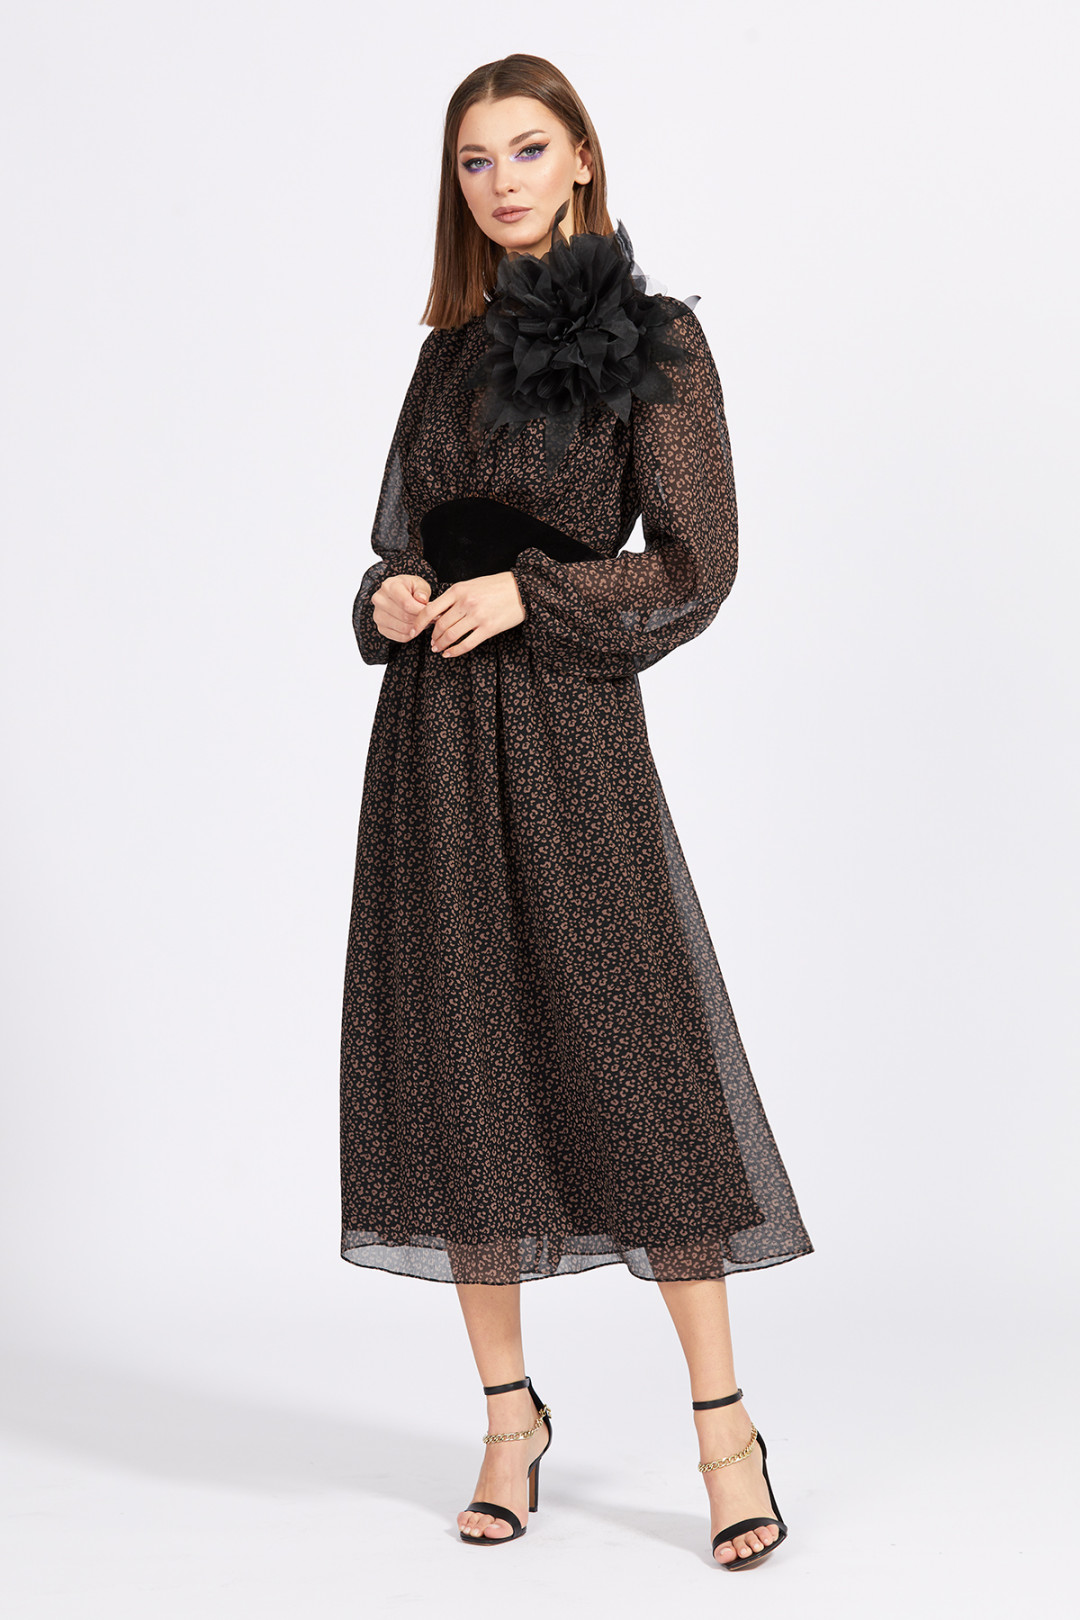 Платье Эола Стиль 2153 черный/коричневый